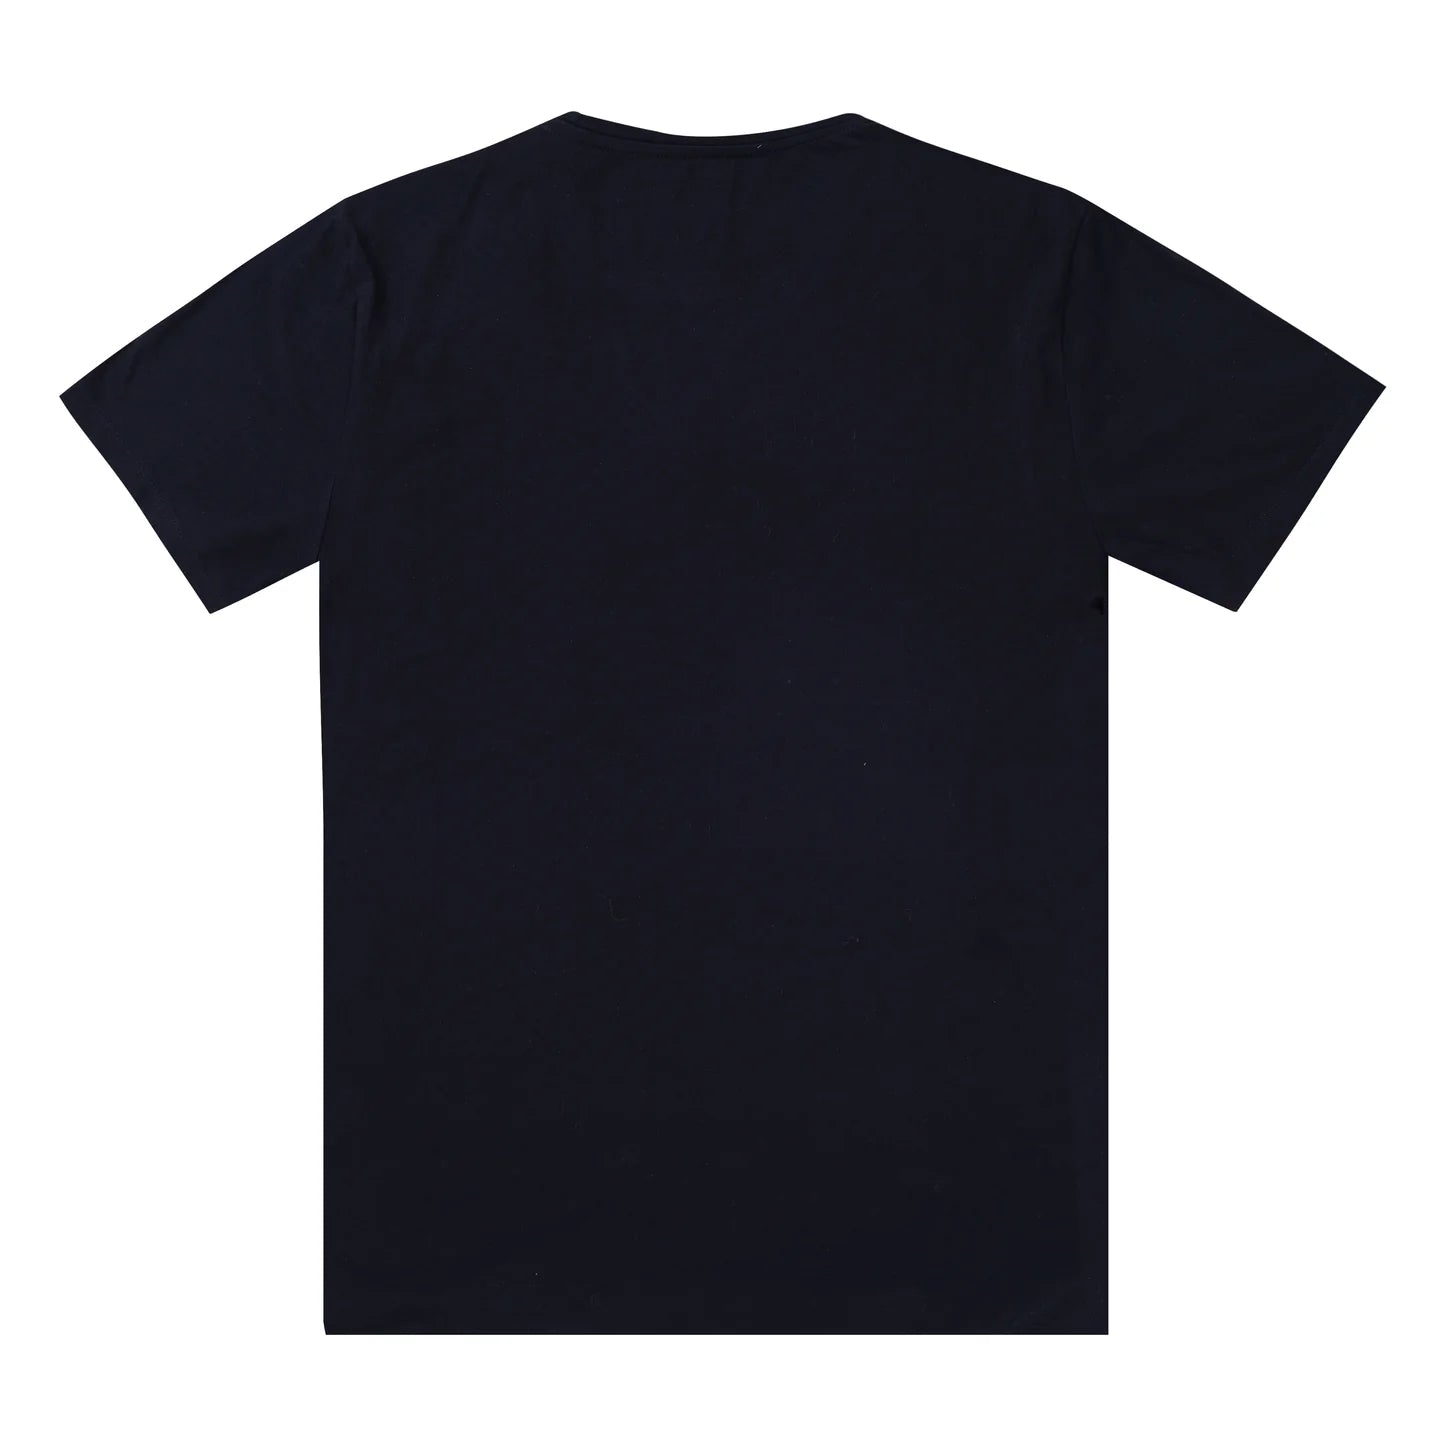 Black T shirts dubai